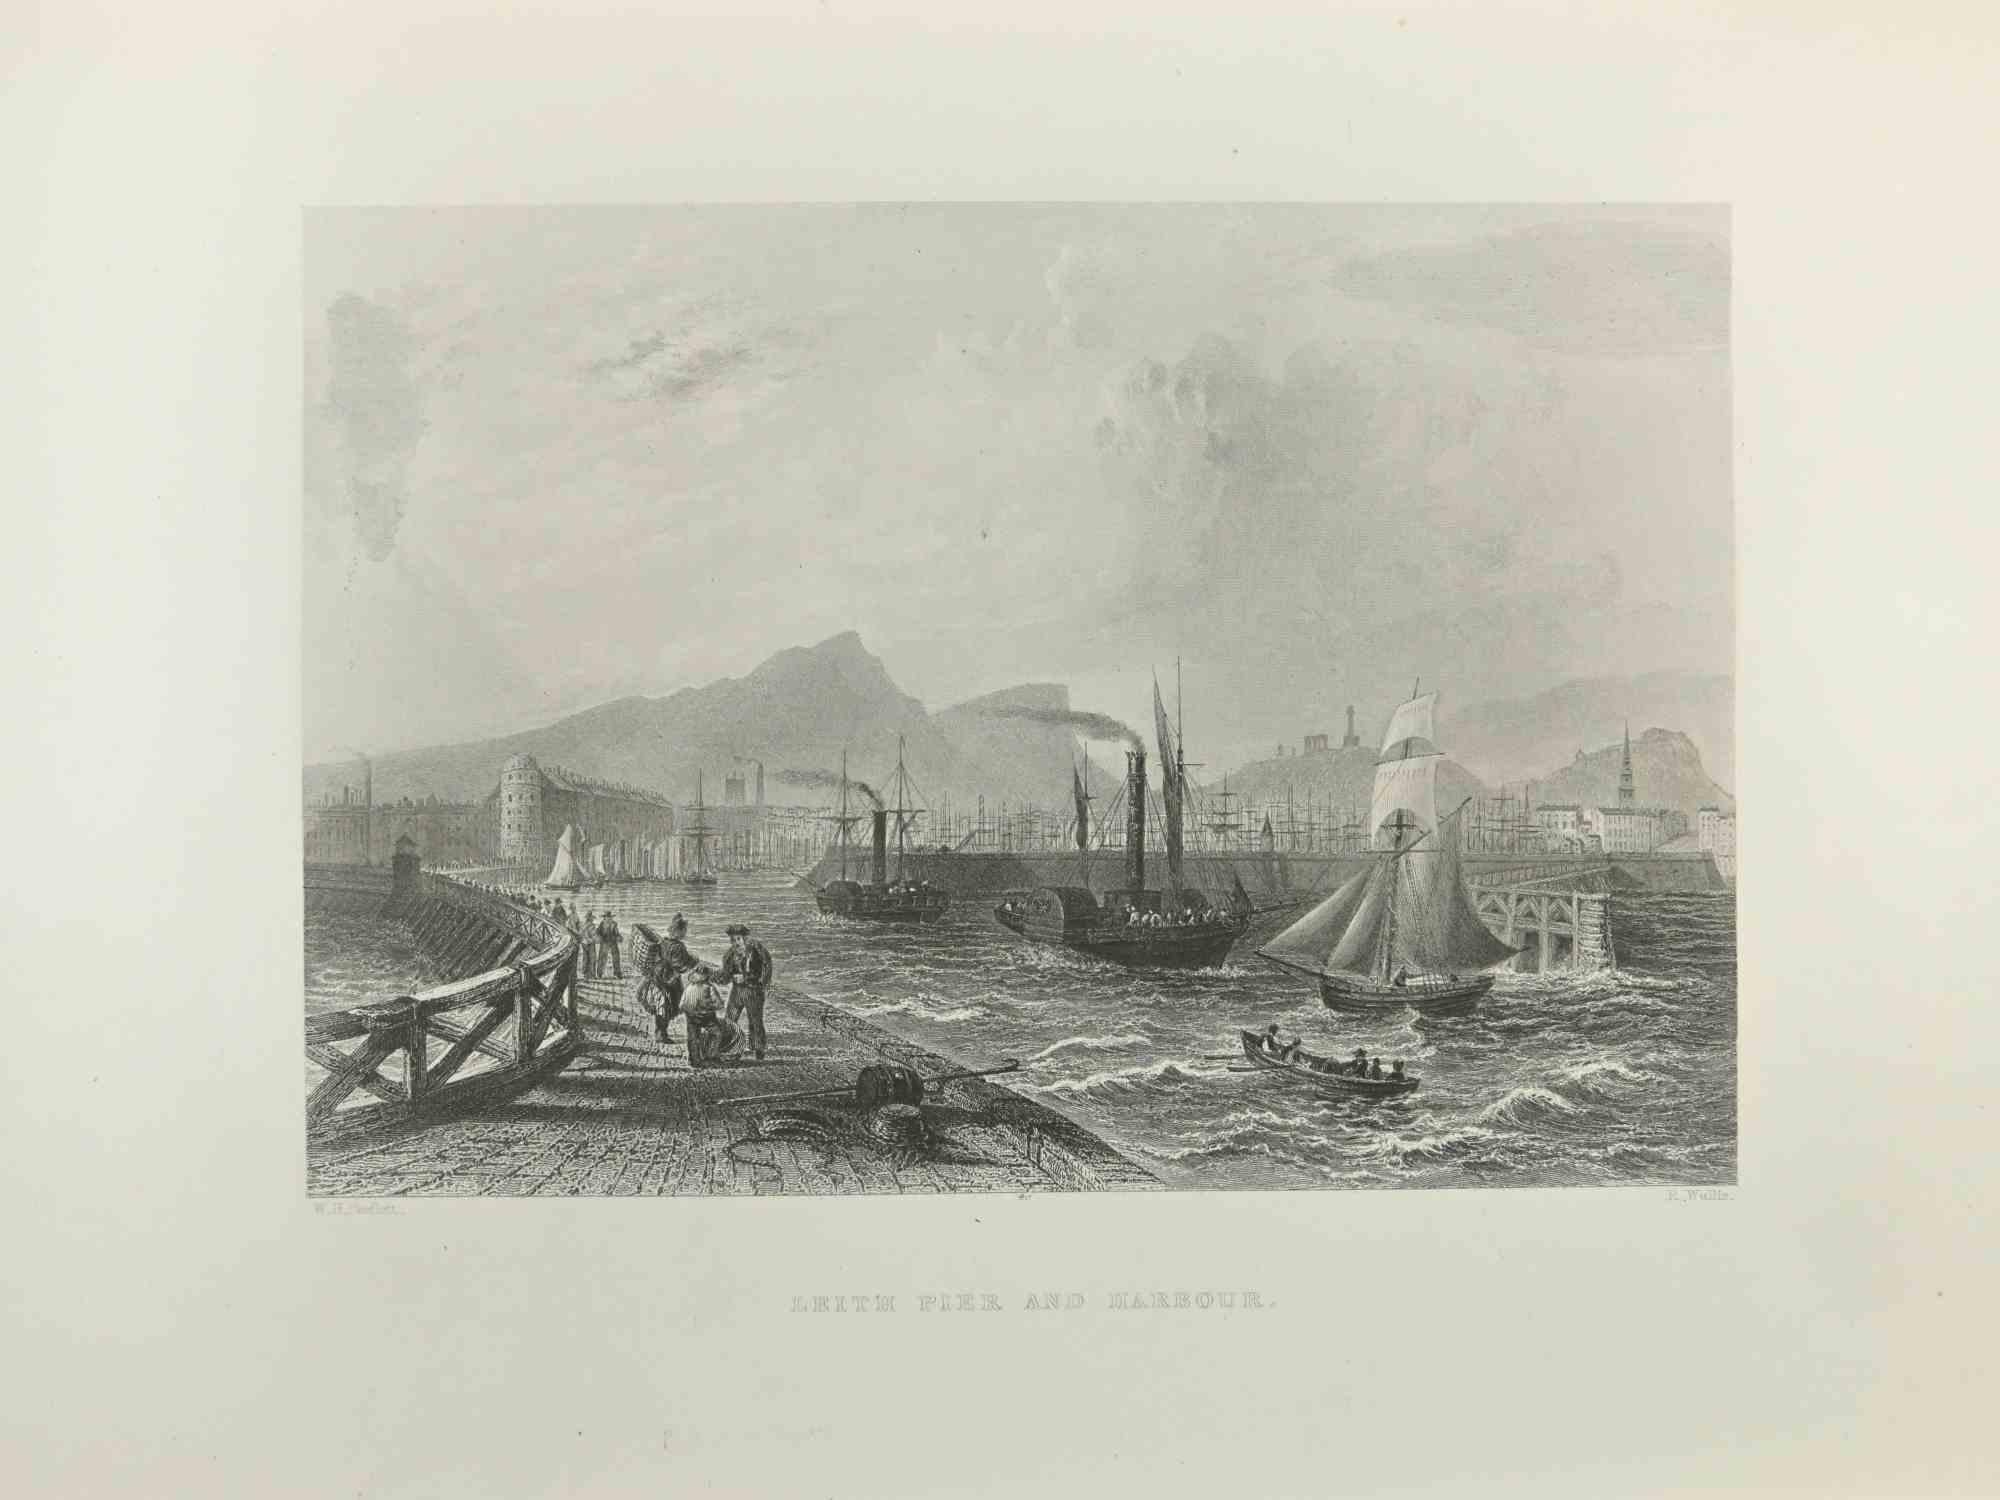 William Henry Bartlett  Figurative Print – Leith Pier and Harbour – Radierung von W.H. Bartlett – 1845